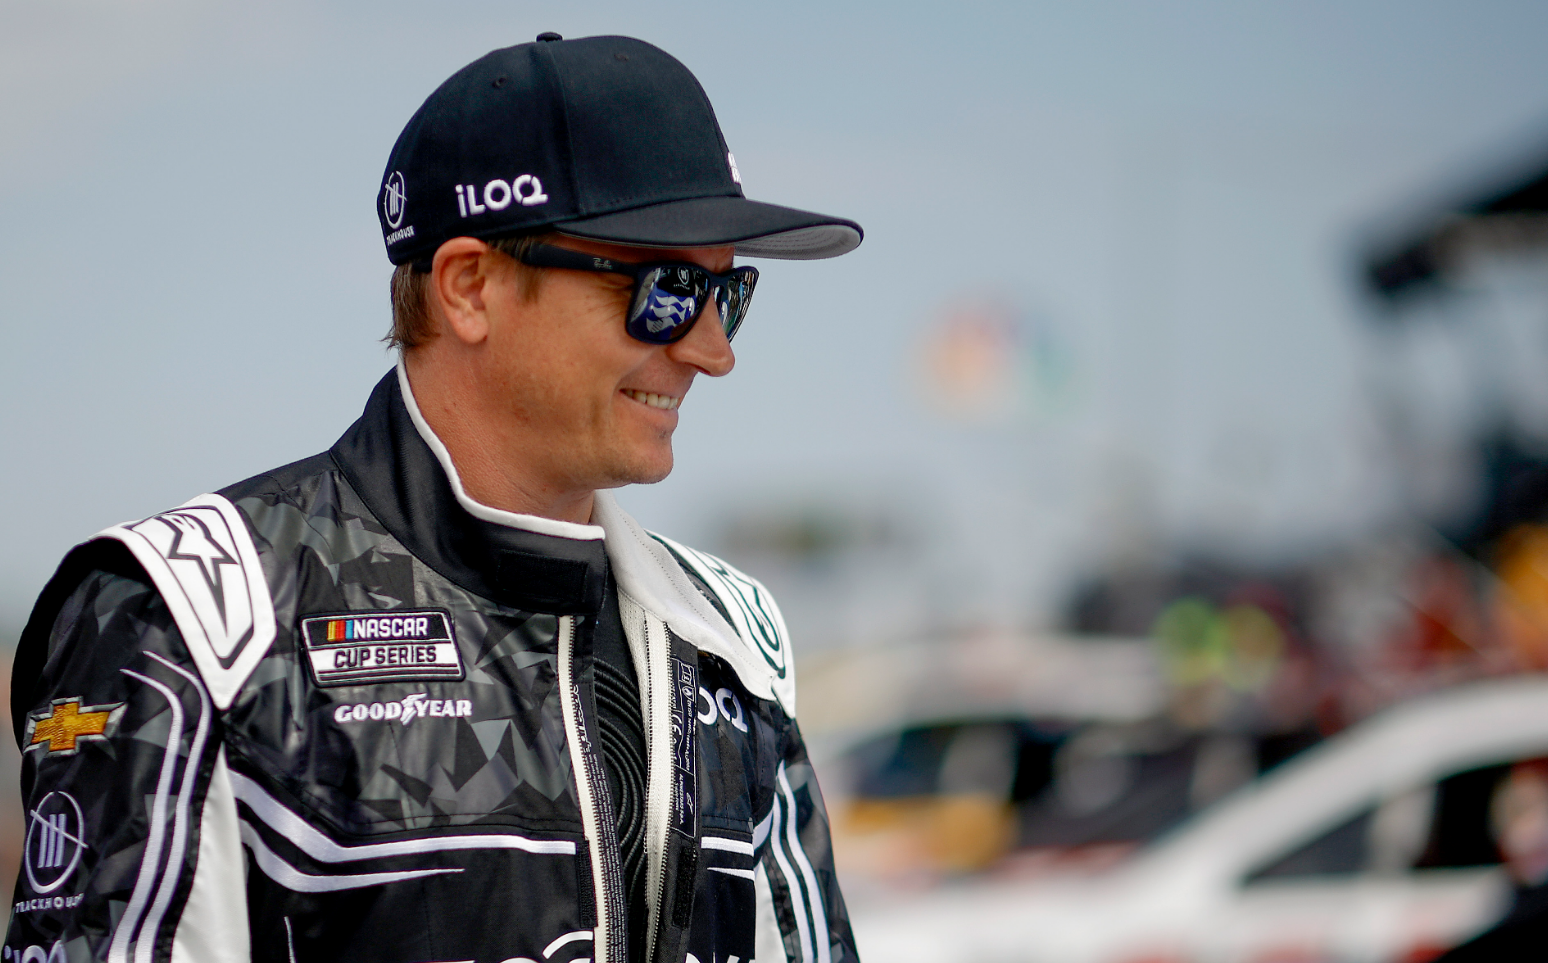 Sajtó: Räikkönen az IndyCarban folytathatja, megvan a NASCAR Le Mans-i pilótafelállása